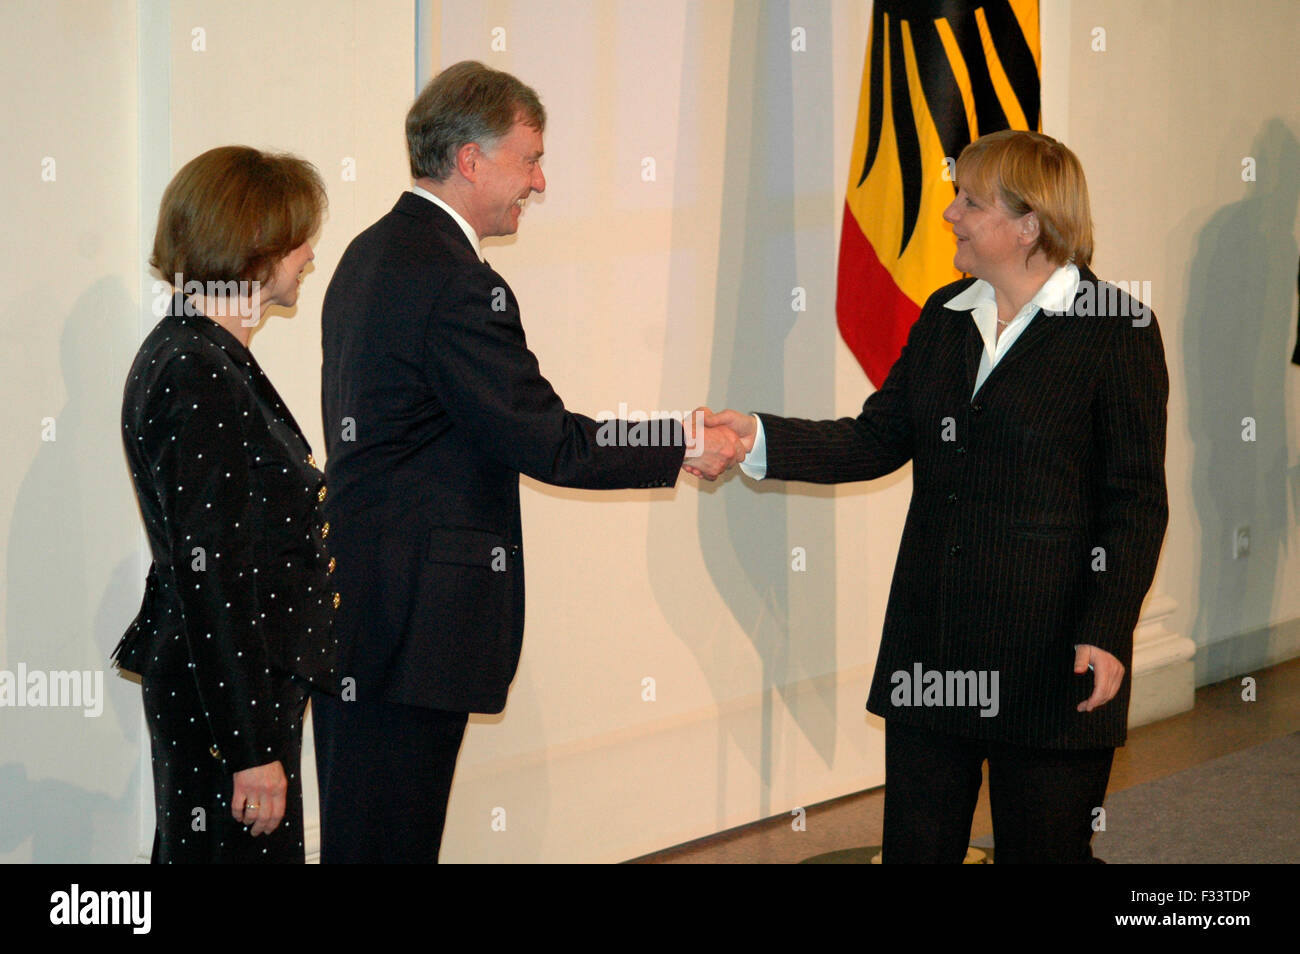 Bundespraesident Koehler mit seiner Ehefrau, Angela Merkel - Neujahrsempfang des Bundespraesidenten im Schloss Charlottenburg am Stock Photo